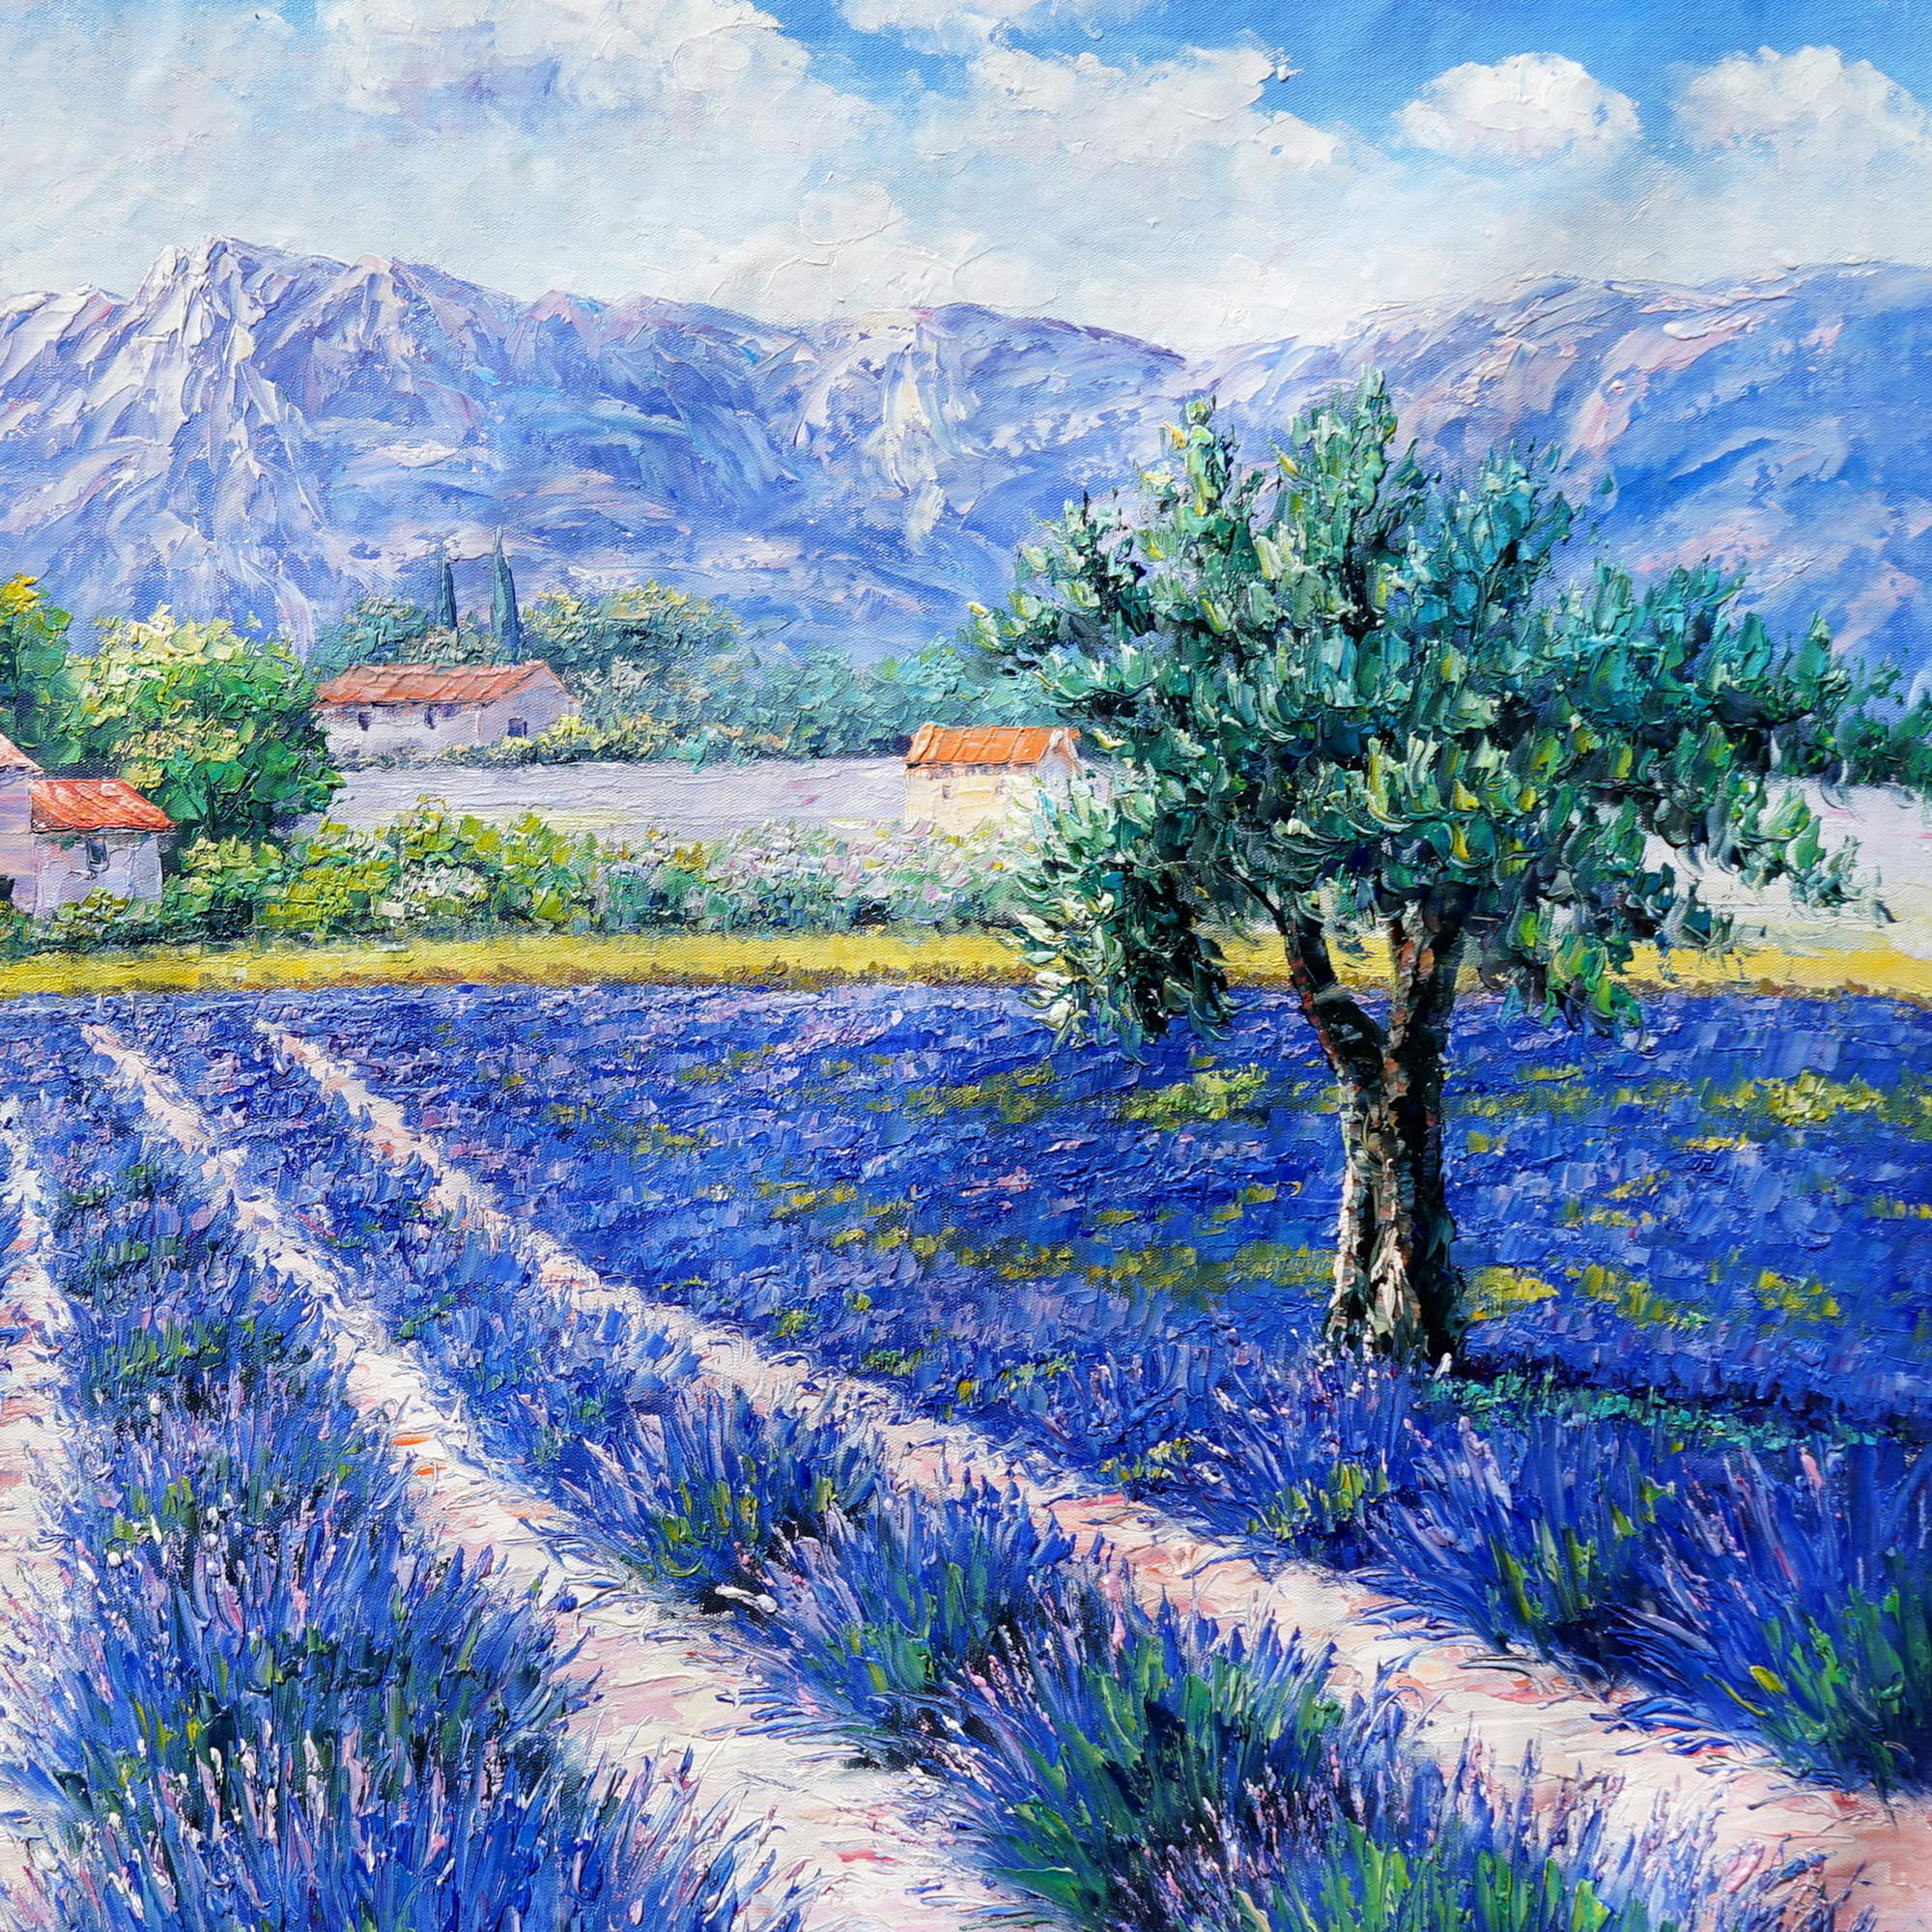 Champs de lavande de Provence peints à la main 75x100cm